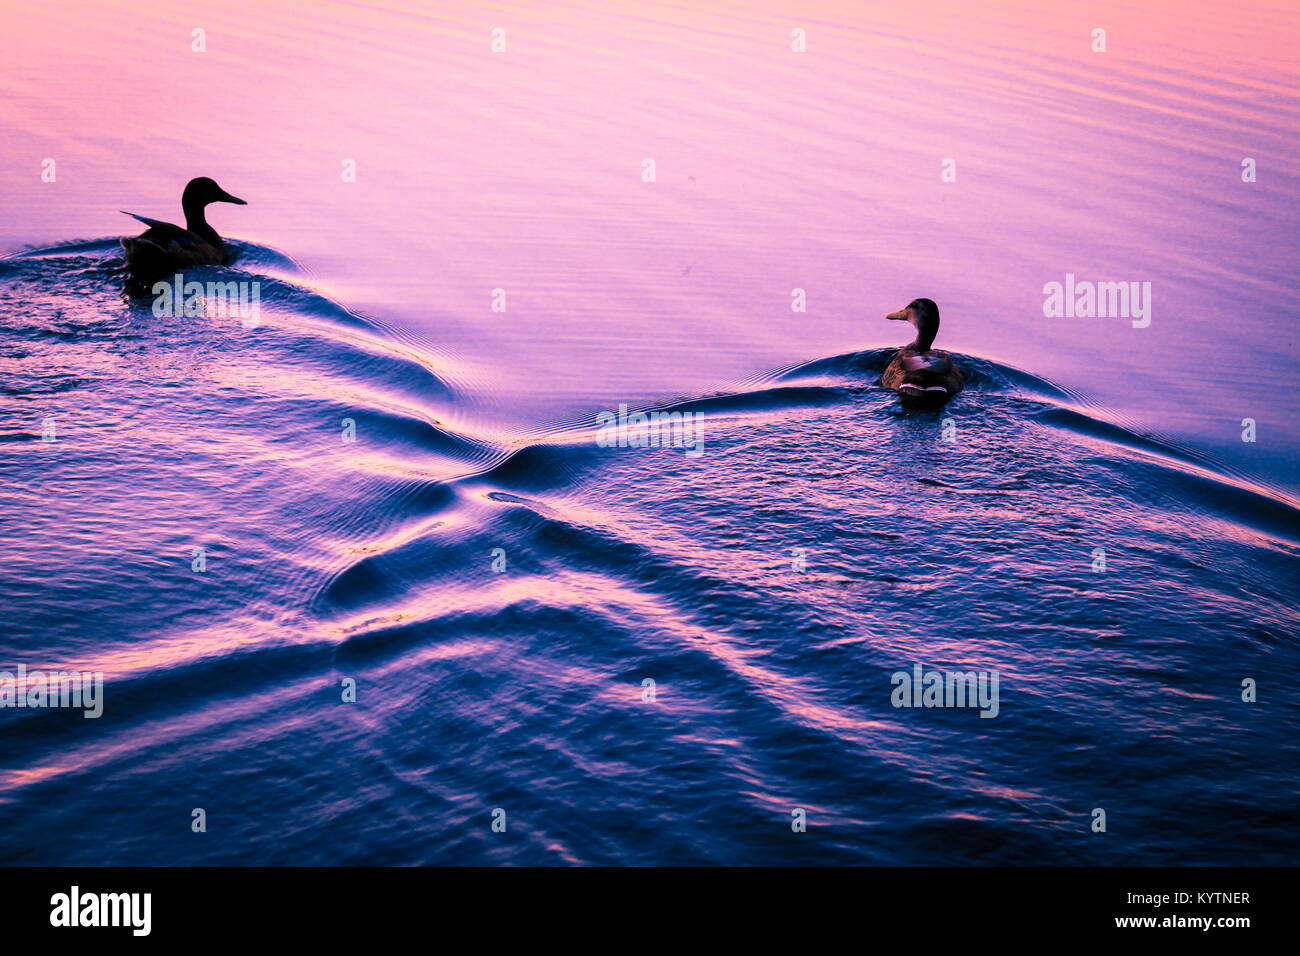 Zwei Enten schwimmen auf einem violetten See-UK, Auge Grün Natur finden. Schwimmen Nebeneinander in Form eines Herzens auf See mit einem violetten Farbton. Stockfoto